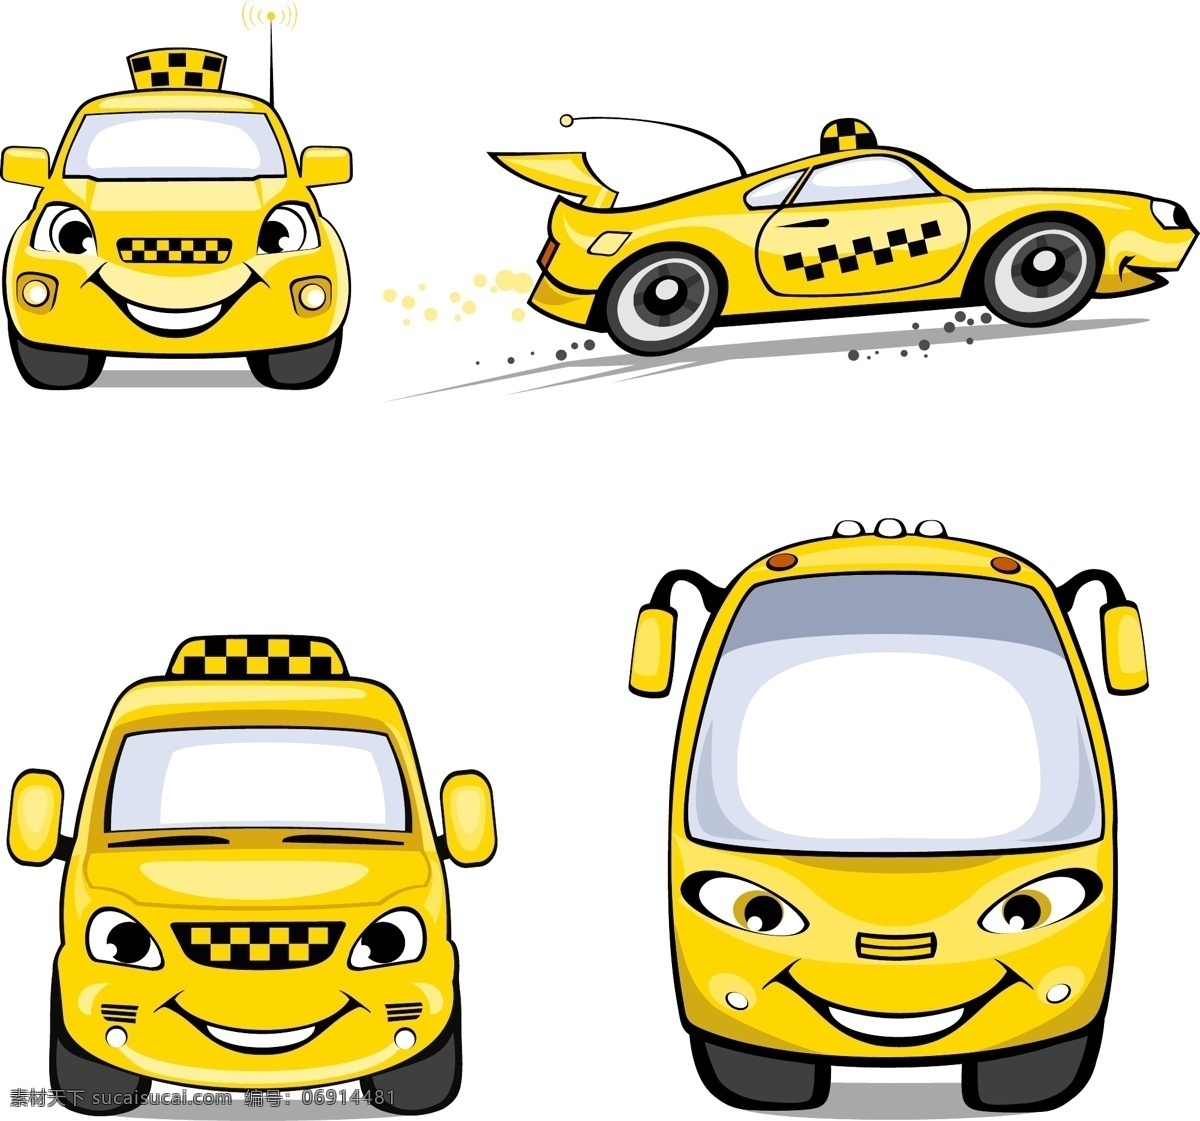 出租车 交通工具 卡通 可爱 现代科技 英国 矢量 模板下载 taxi psd源文件